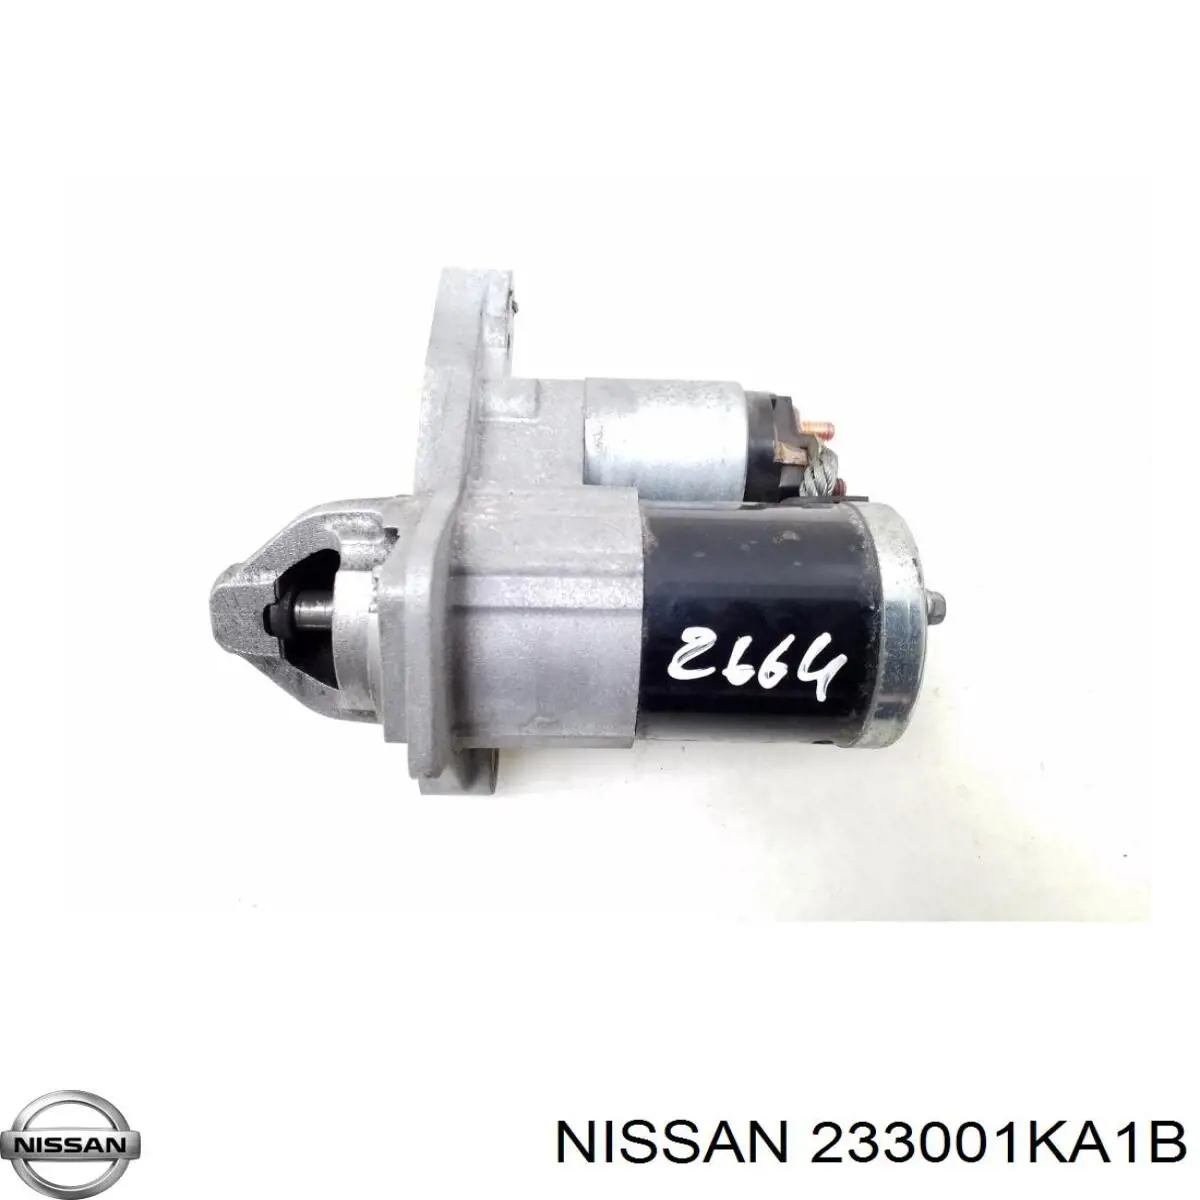 233001KA1B Nissan motor de arranque